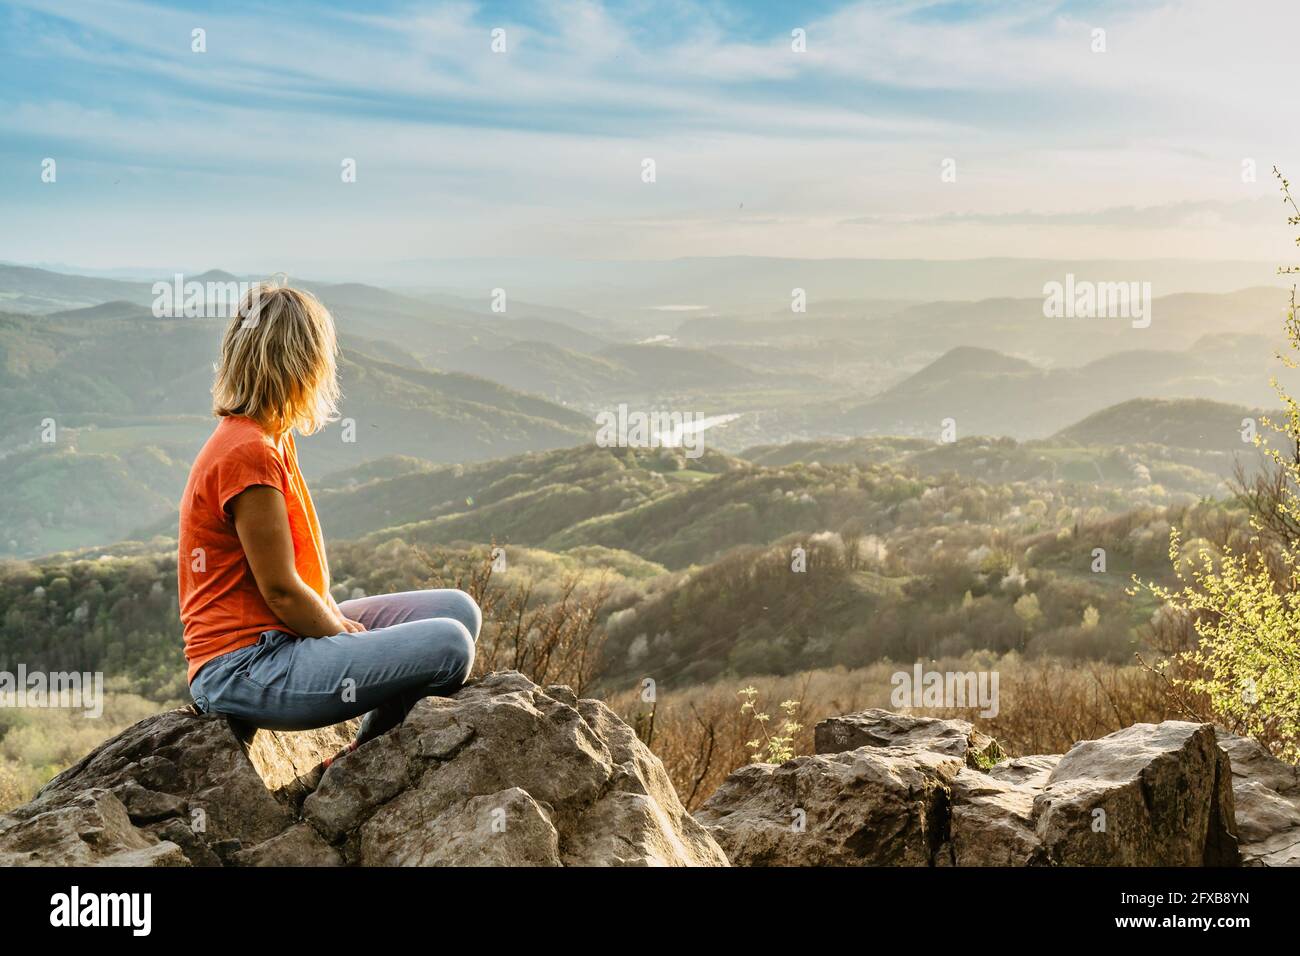 Weibliche Reisende mit friedlichem Geist sitzen auf Felsen und genießen die Aussicht Von Frühling üppiges Tal bei Sonnenuntergang.Wandertag aktiven Lebensstil.Wanderlust Frau Stockfoto